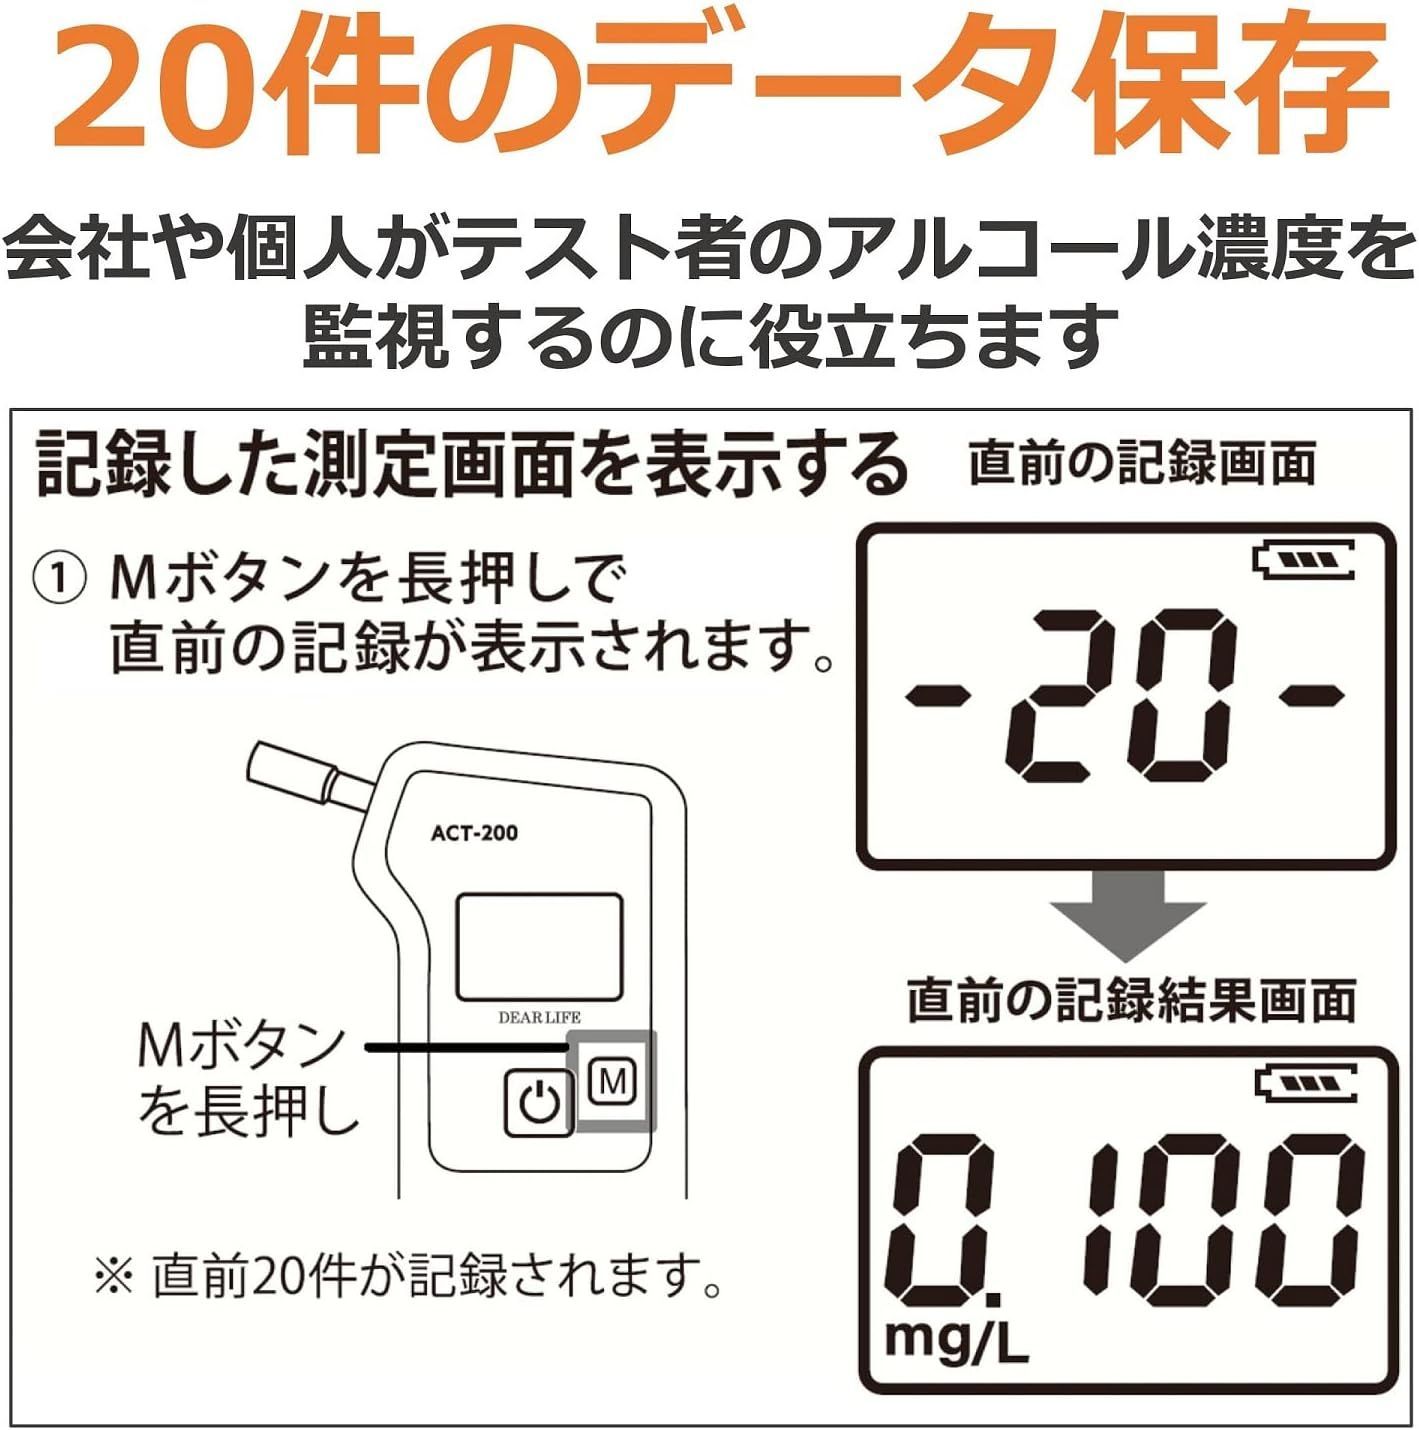 ライノプロダクツ 燃料電池式アルコールチェッカー 日本国内メーカー 5万回の長寿命 業務用 ACT-200 国家公安委員会が定めるアルコール - 3